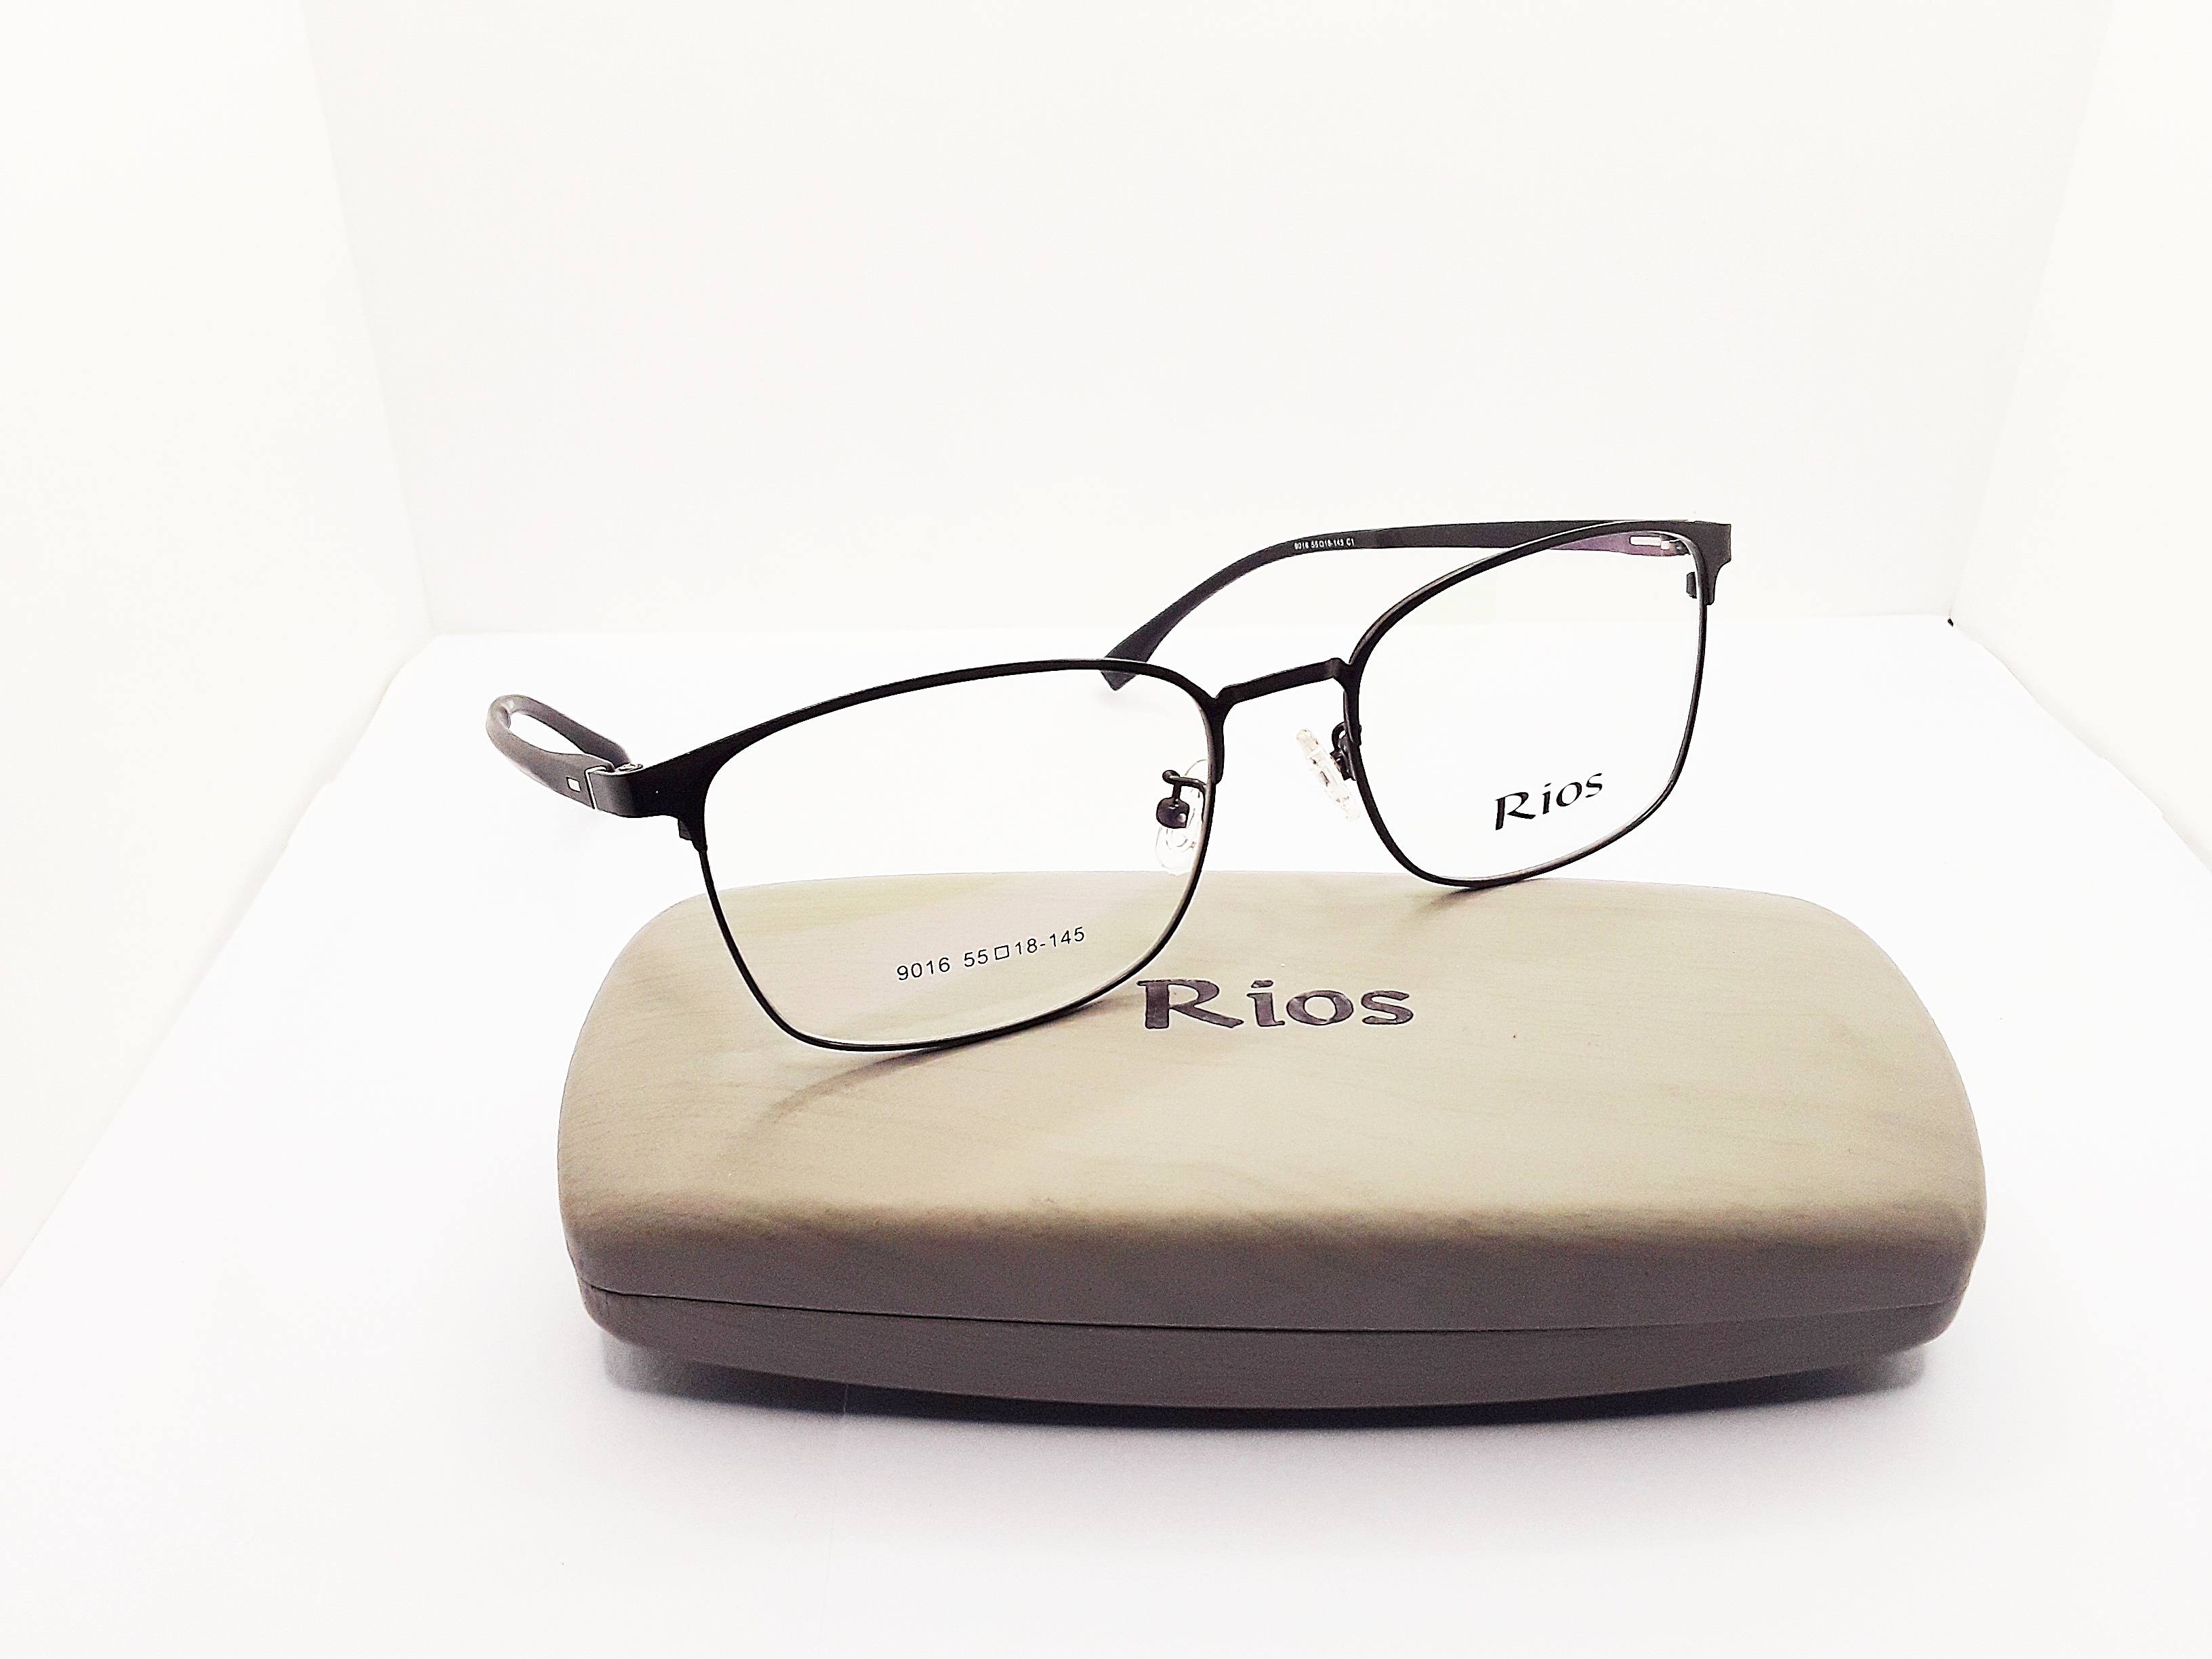 ภาพอธิบายเพิ่มเติมของ แว่นสายตายาว แว่นตาอ่านหนังสือ ตัดแว่น แว่นตัด เลนส์ออโต้เปลี่ยนสีอ้ตโนมัติ แว่นตัดประกอบเลนส์แท้จากร้านแว่นโดยตรง มาตรฐาน 9016